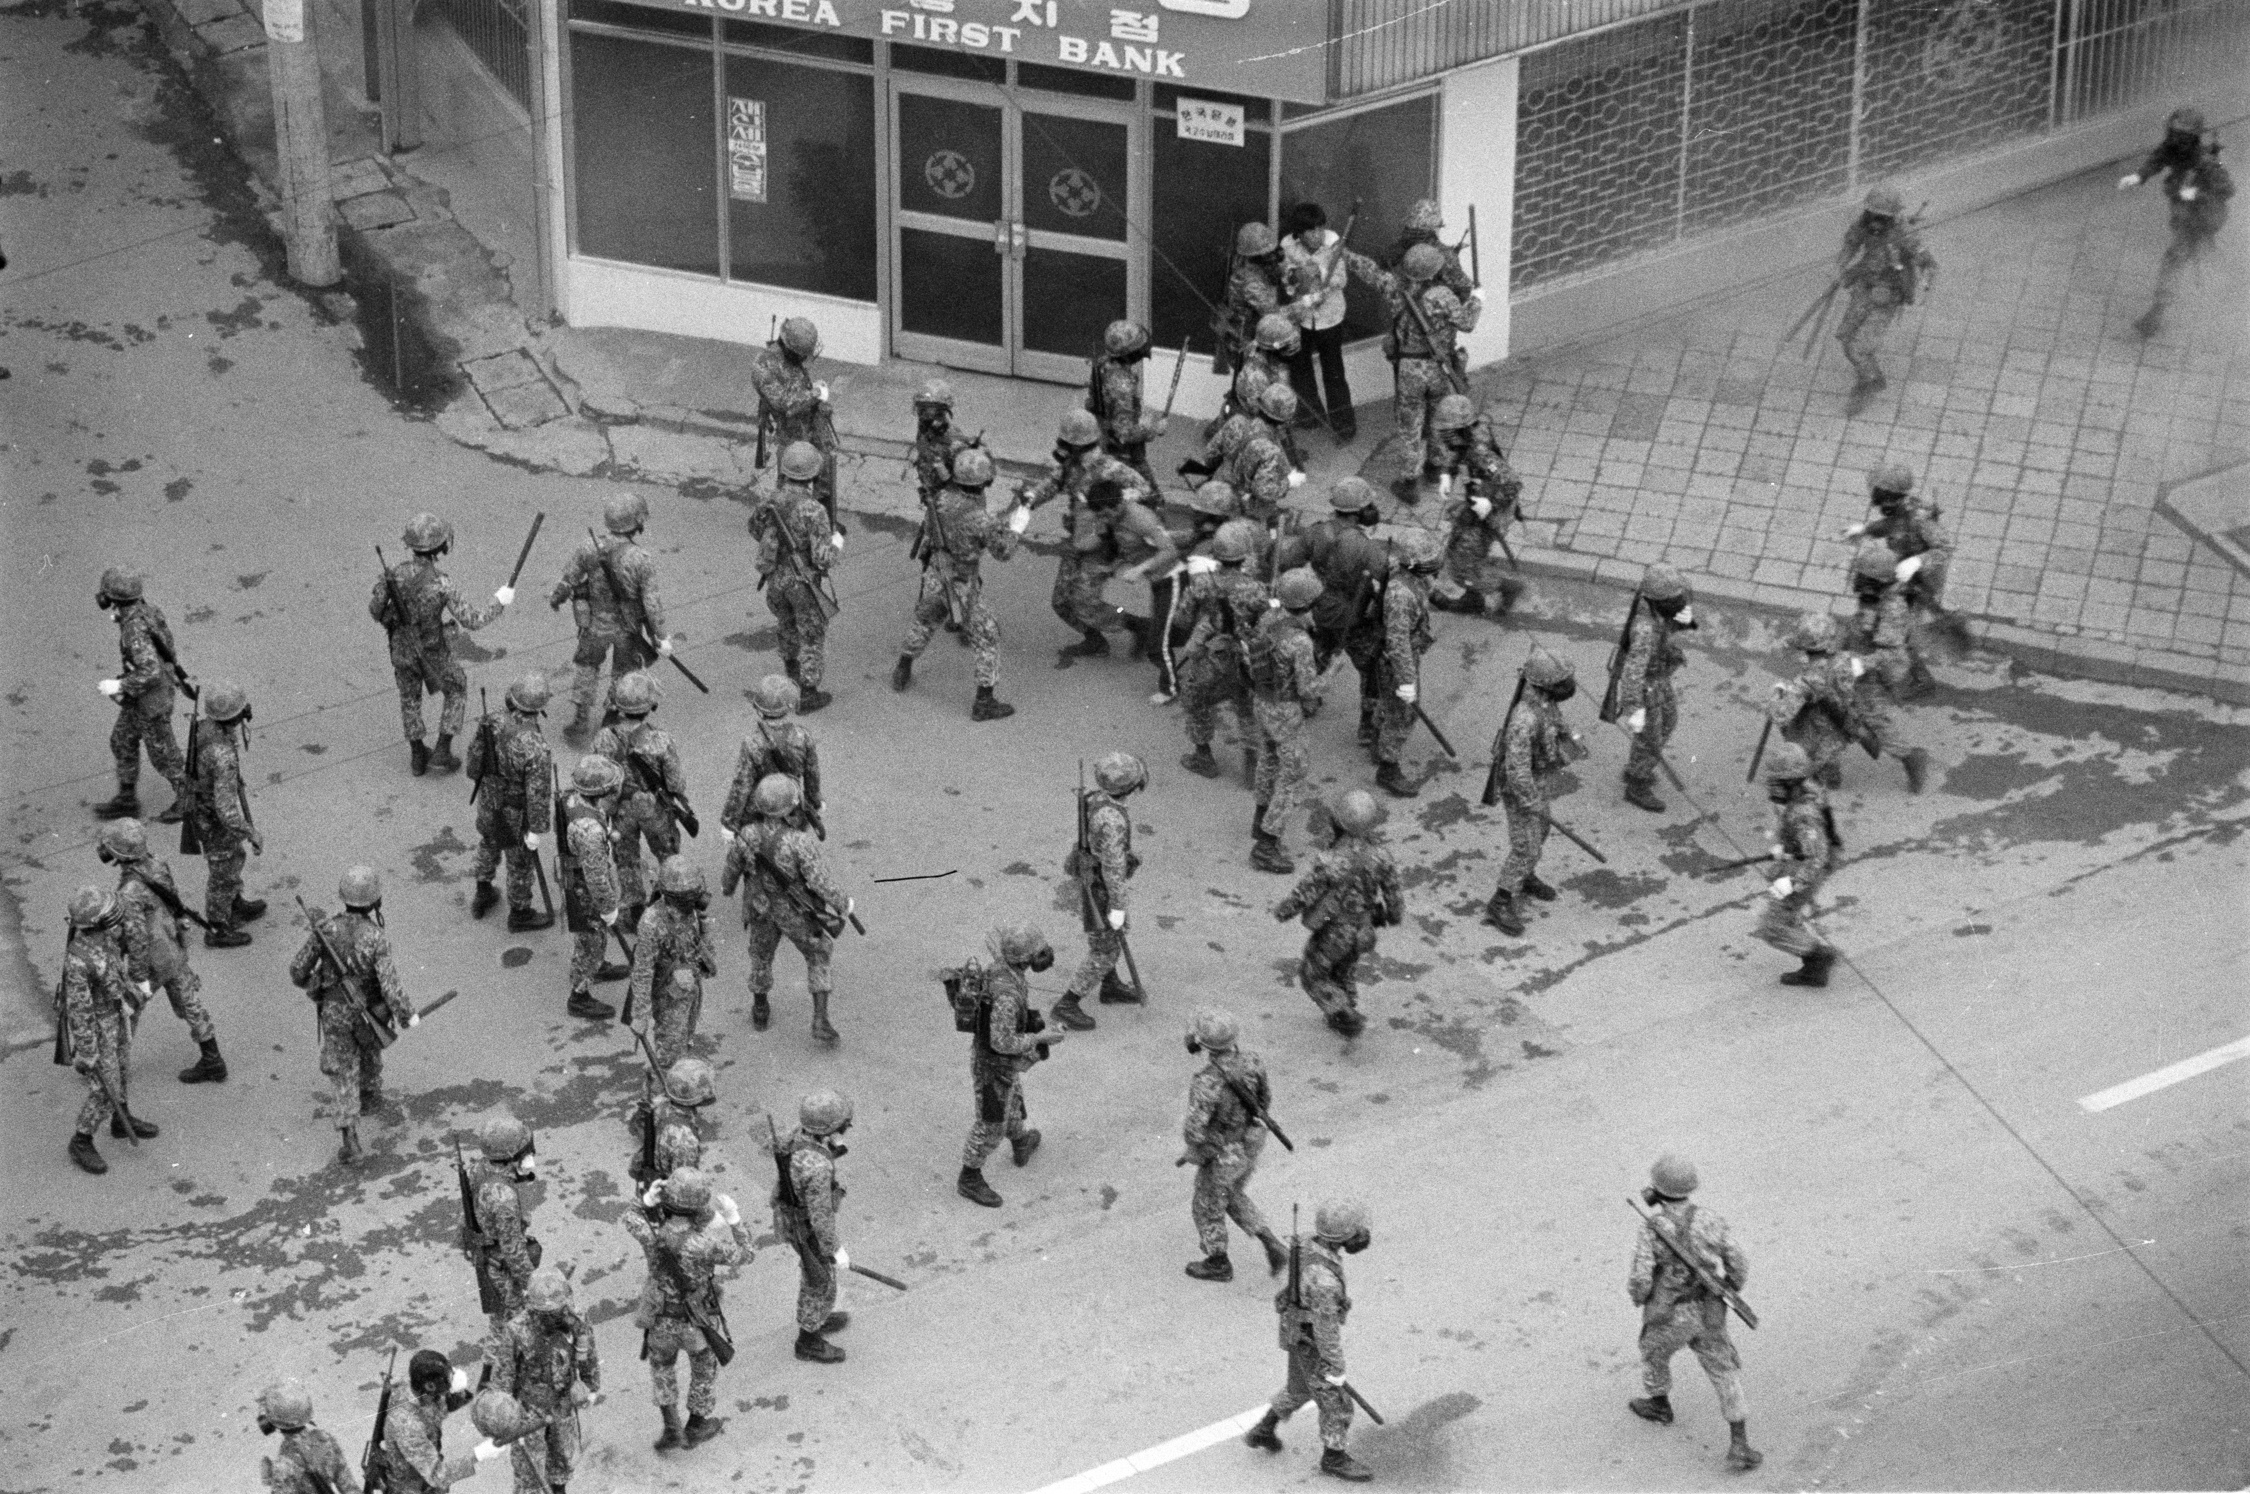 Nach tagelangen Massendemonstrationen der Bevölkerung schlug das Militär die Proteste am 18. Mai gewaltsam nieder. 